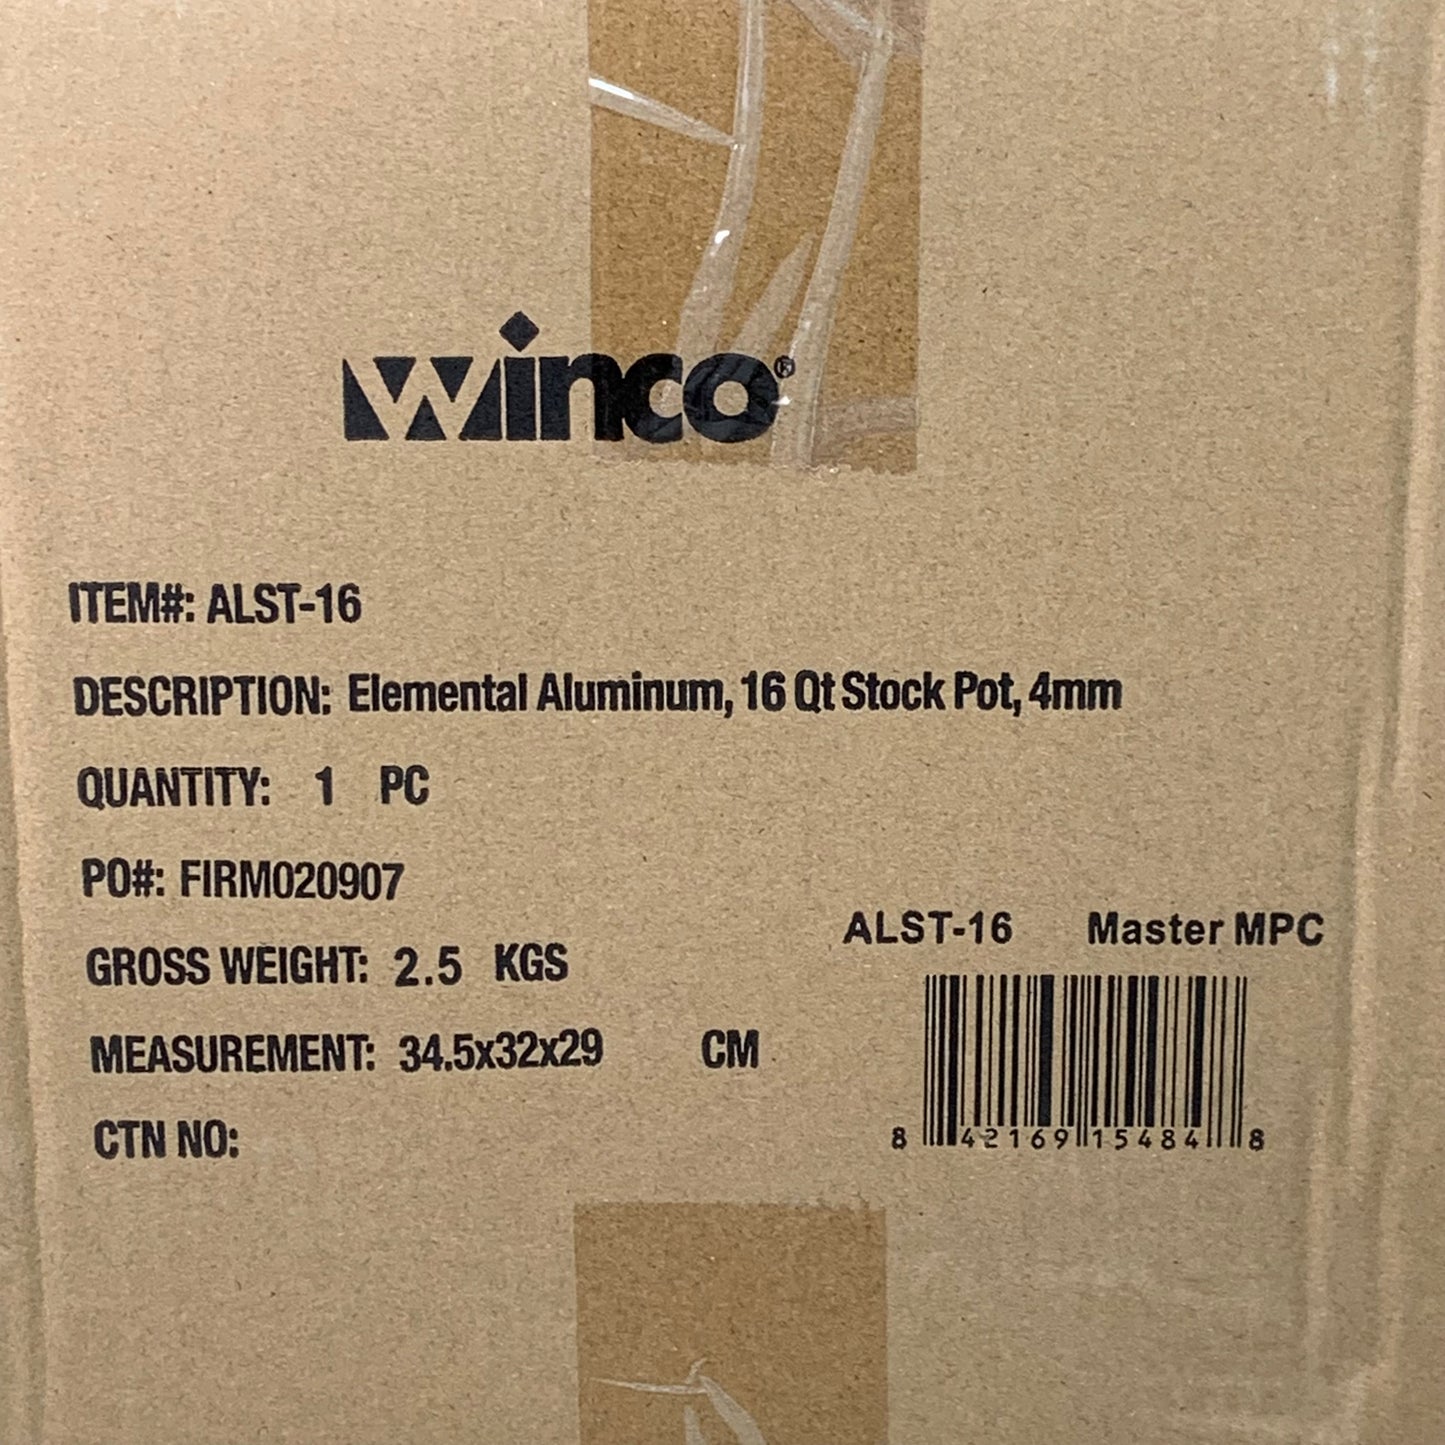 WINCO 16 Qt Elemental Aluminum Stock Pot 4 MM 3/16" Thickness ALST-16